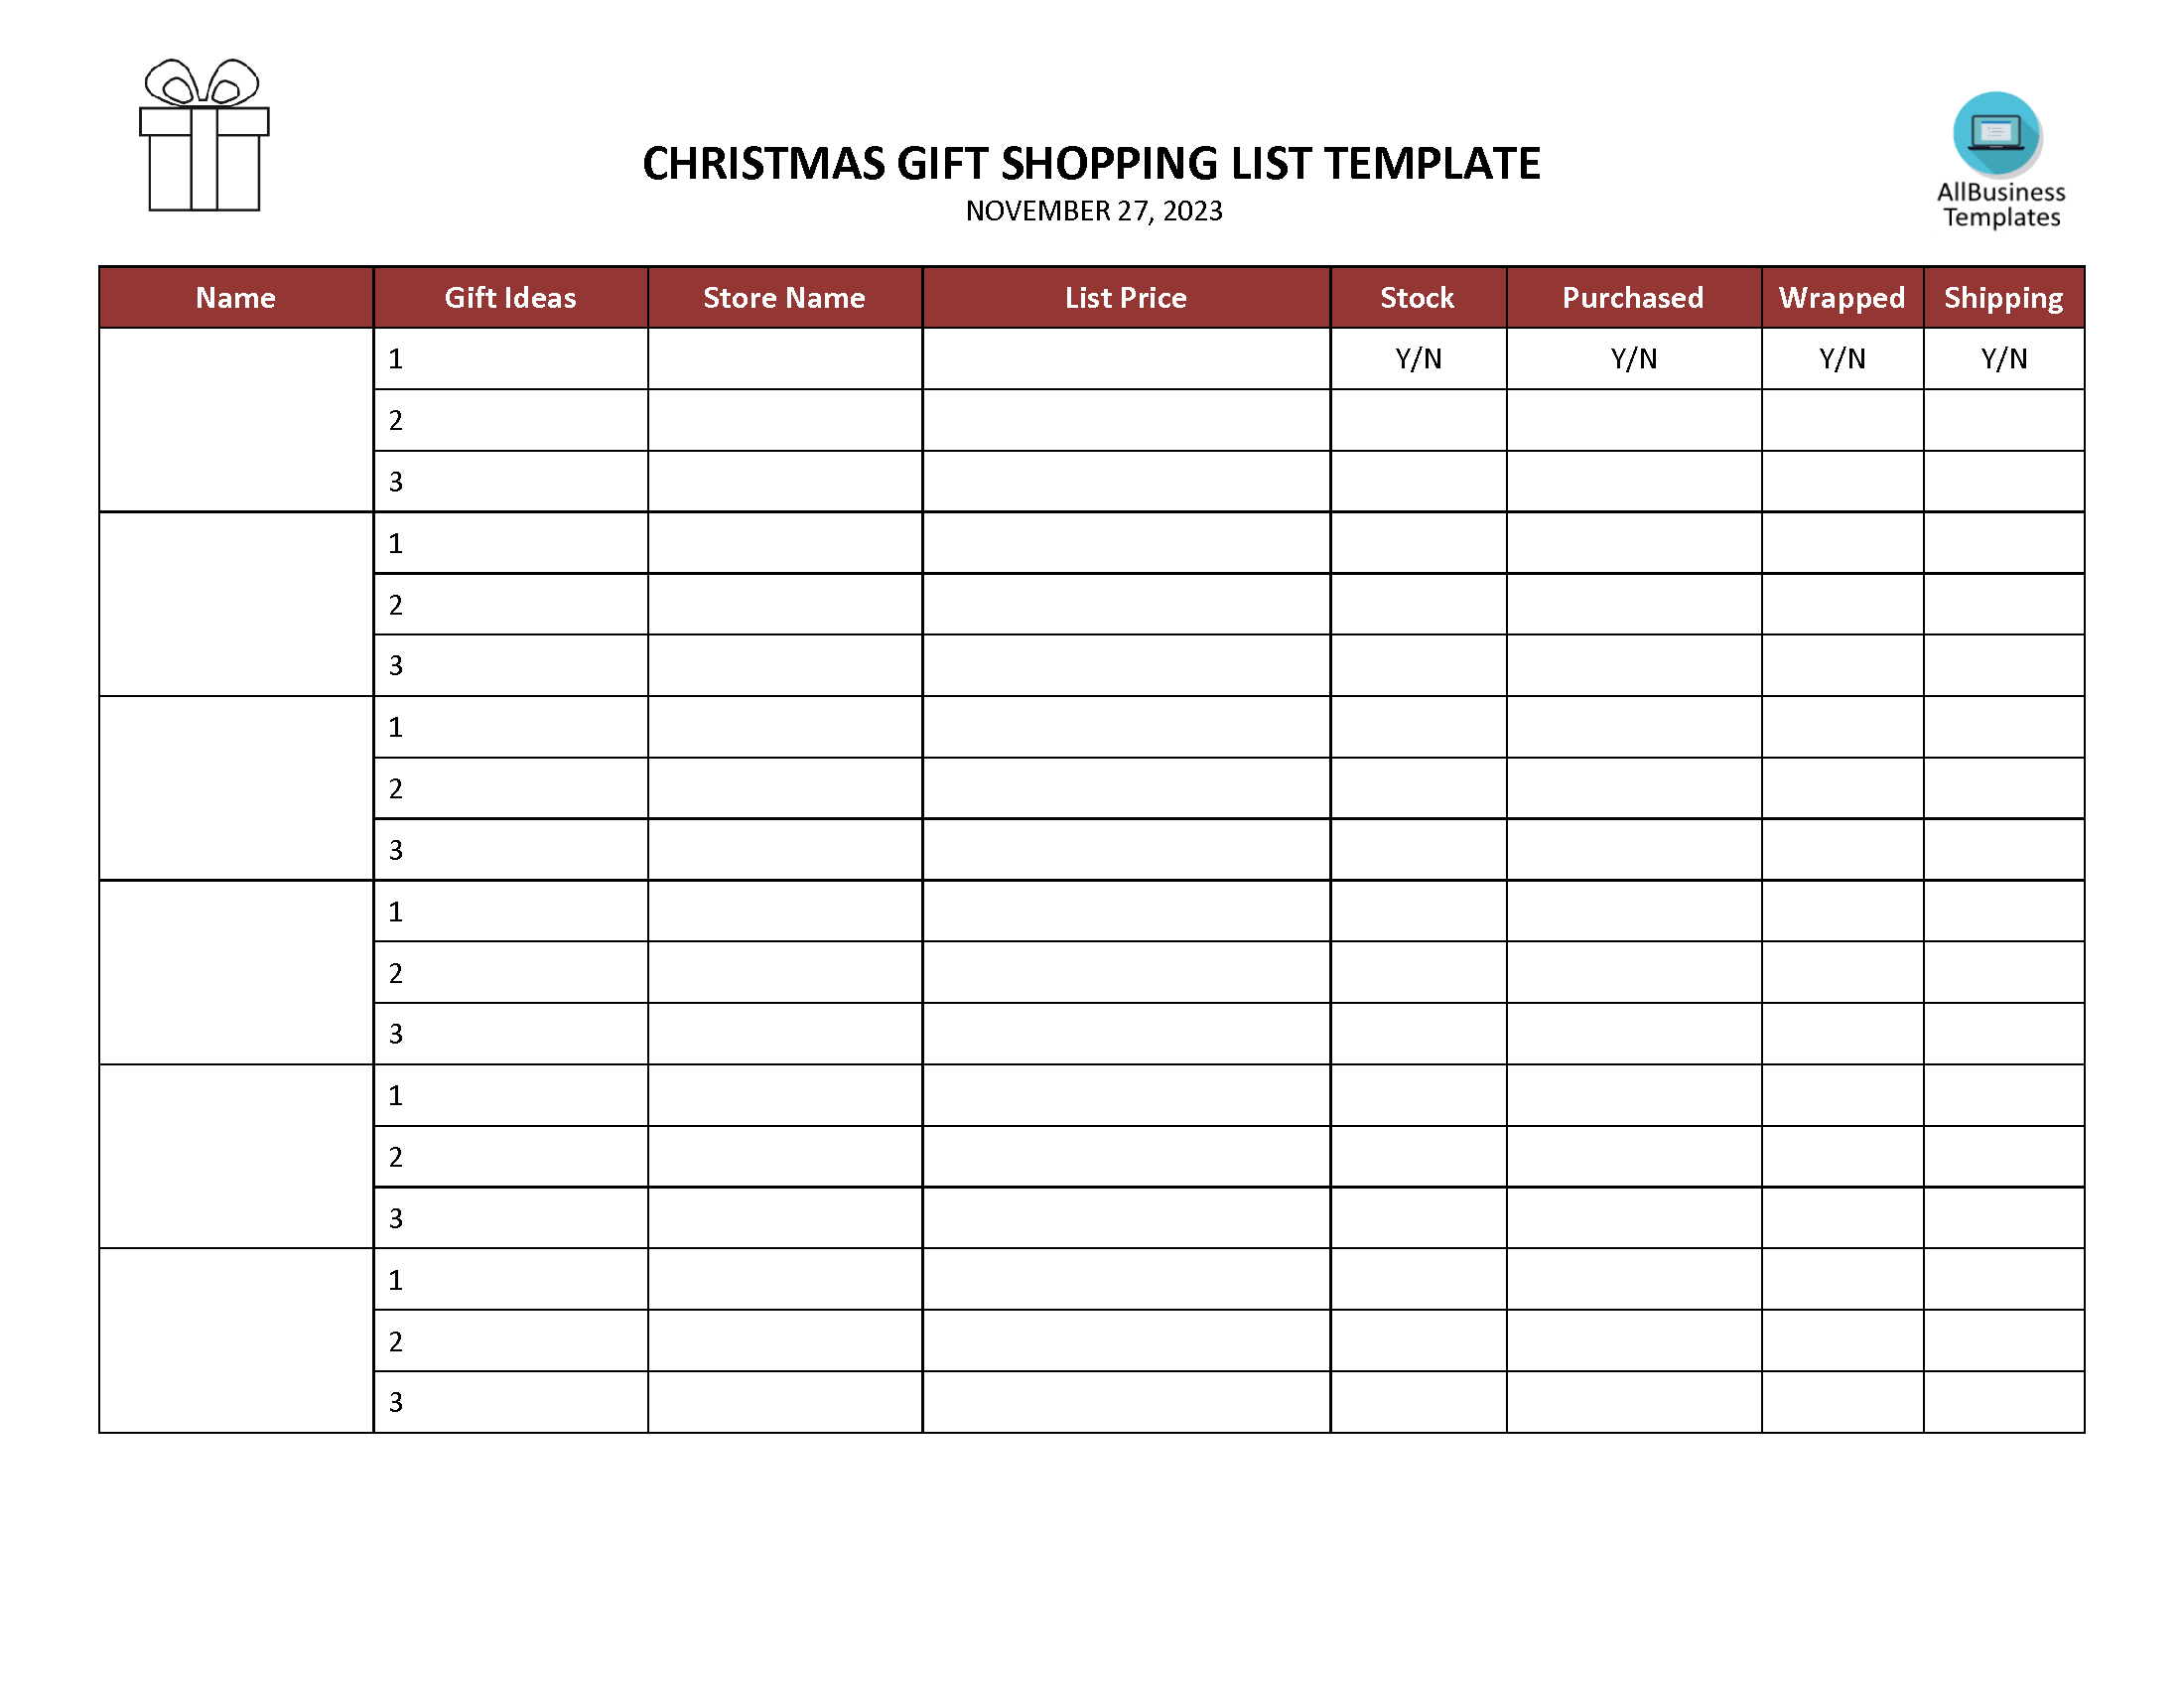 Christmas Gift Shopping List main image